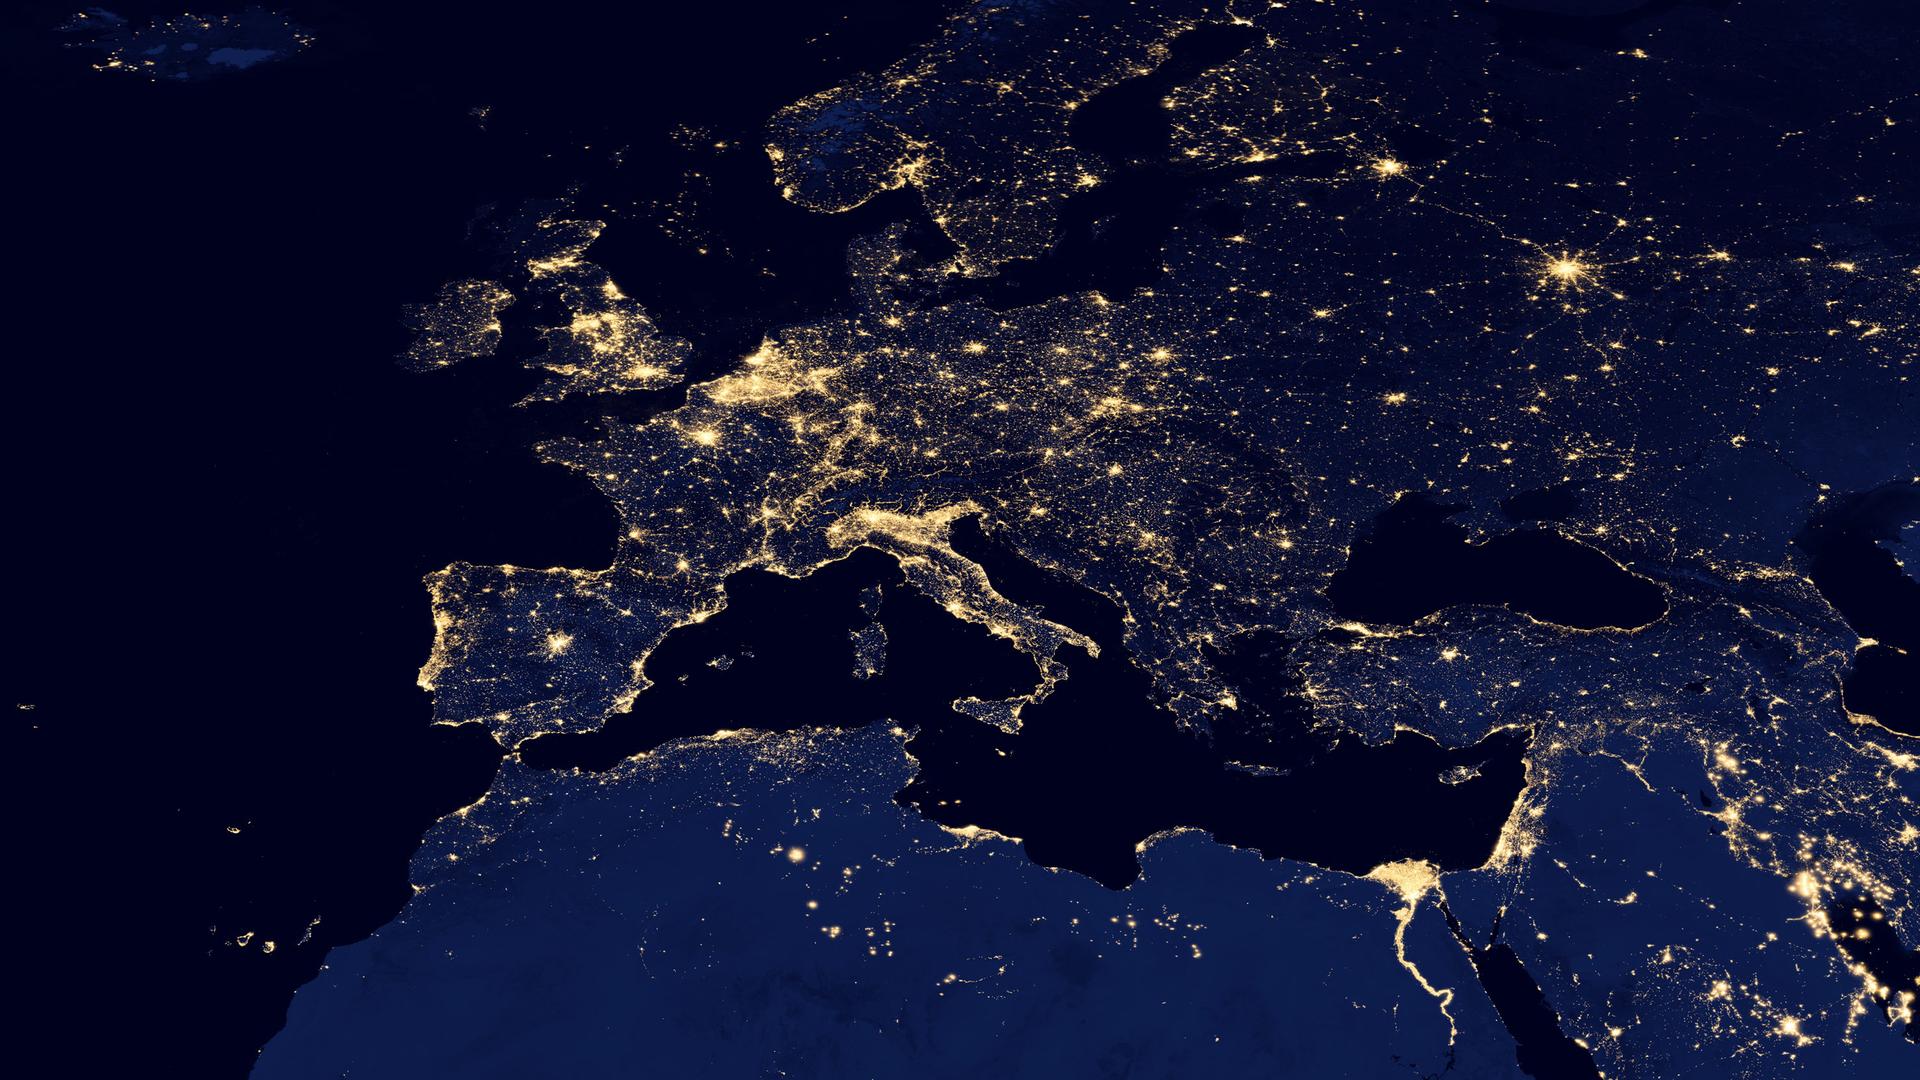 Schrecklich hell: In vielen Gebieten Europas gibt es keine dunklen Nächte mehr, wie diese Satellitenaufnahme zeigt.